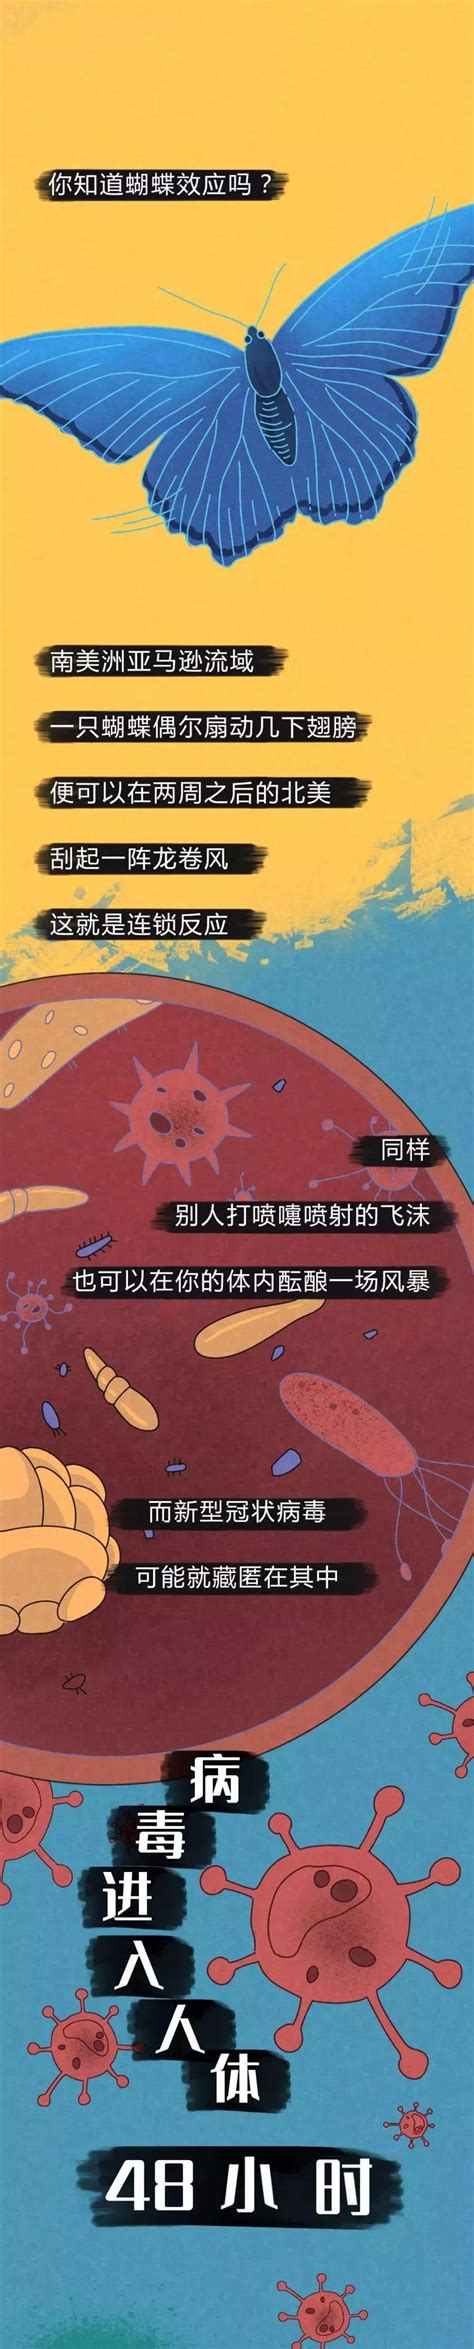 【科普知识】病毒进入体内的48小时-天津中医药大学二附属医院-站群网站发布